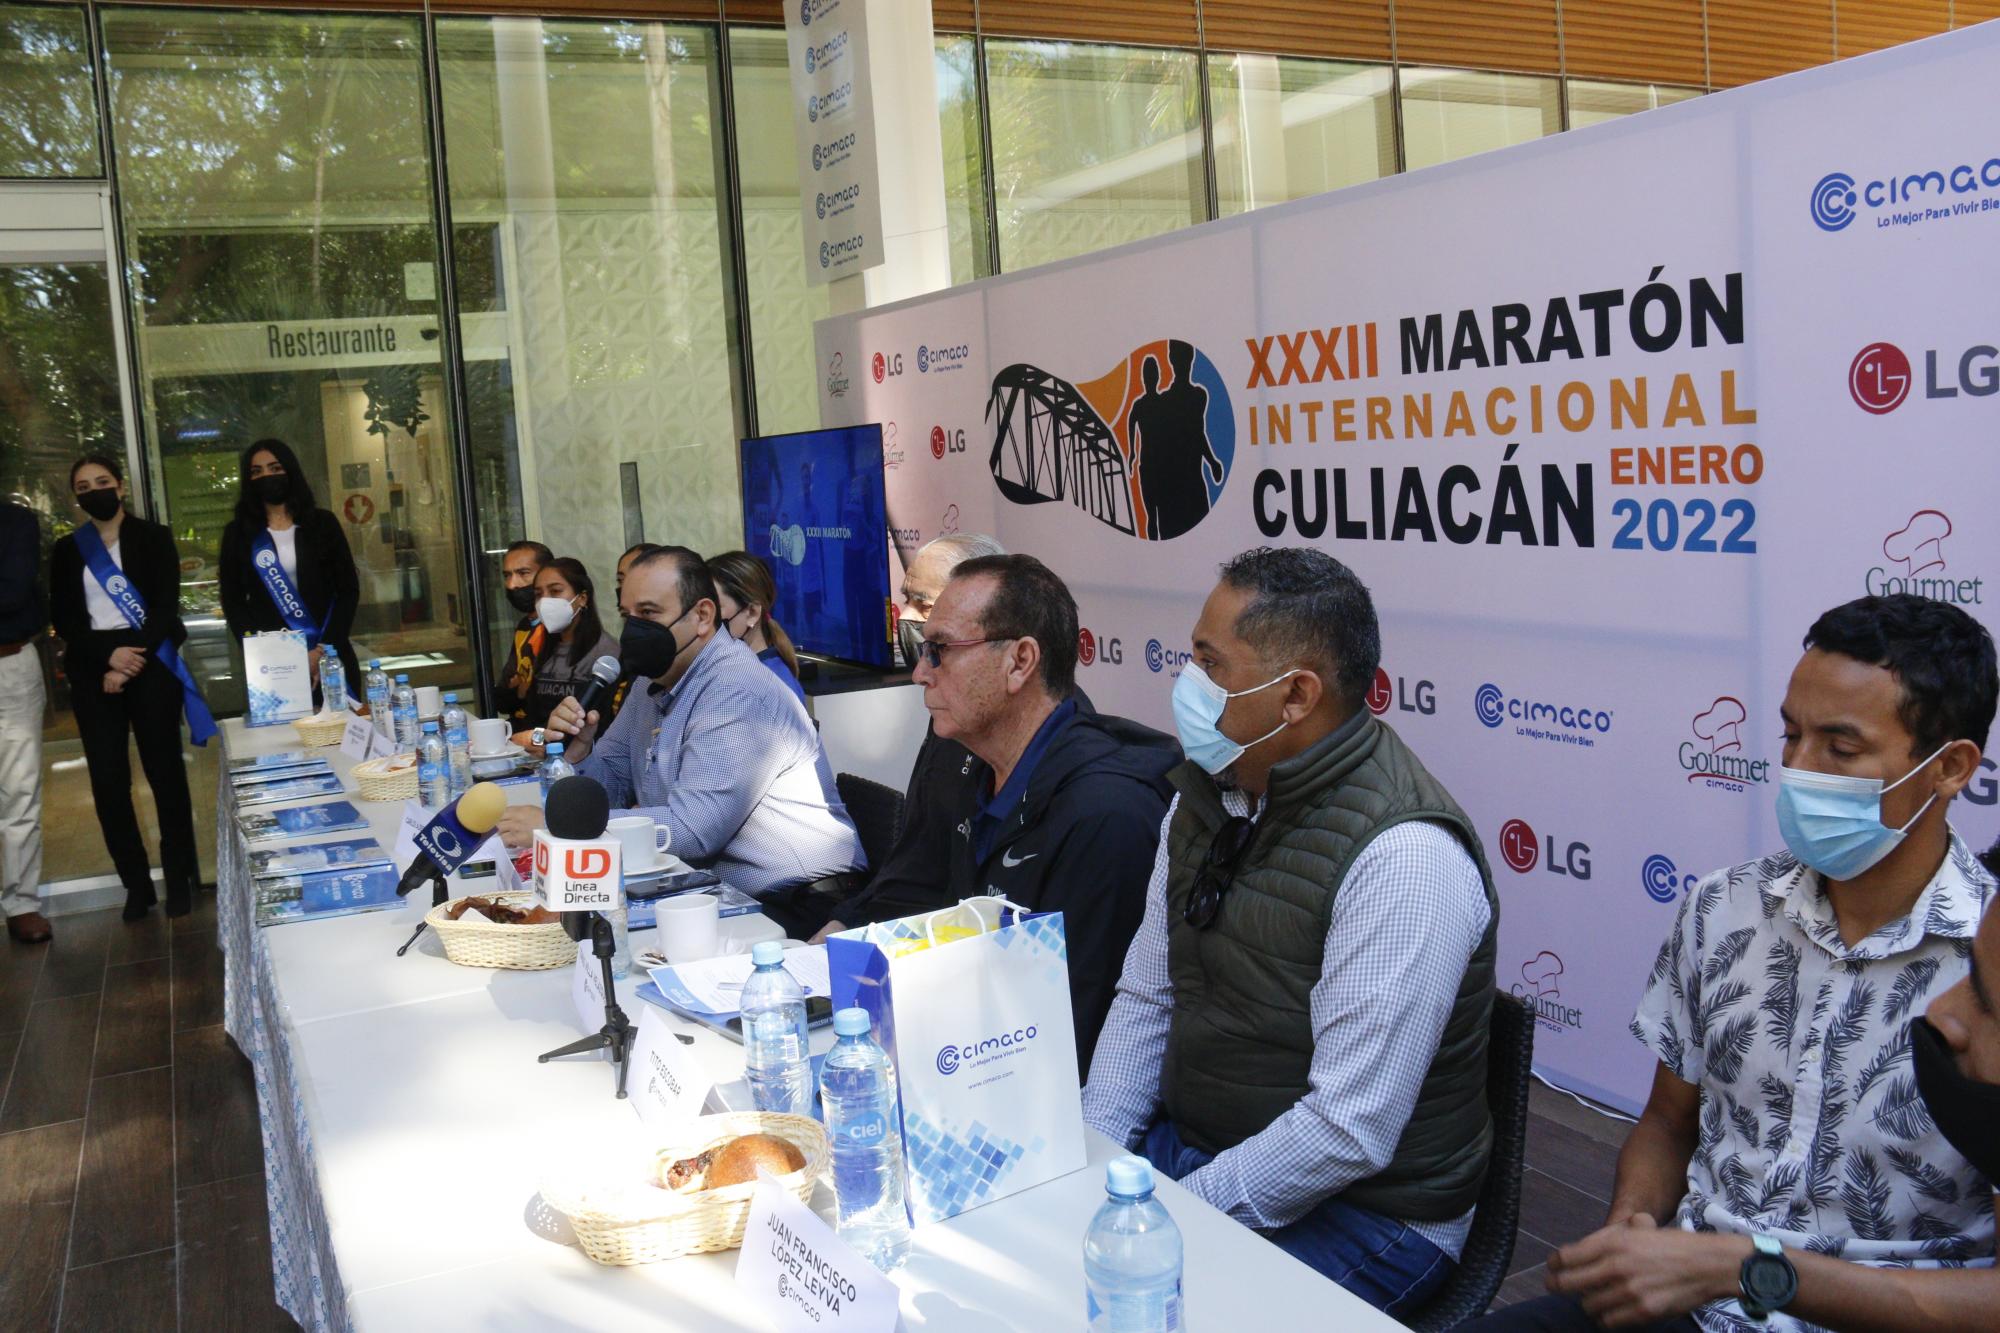 $!Quedan pocos lugares para participar en el Maratón Internacional de Culiacán 2022